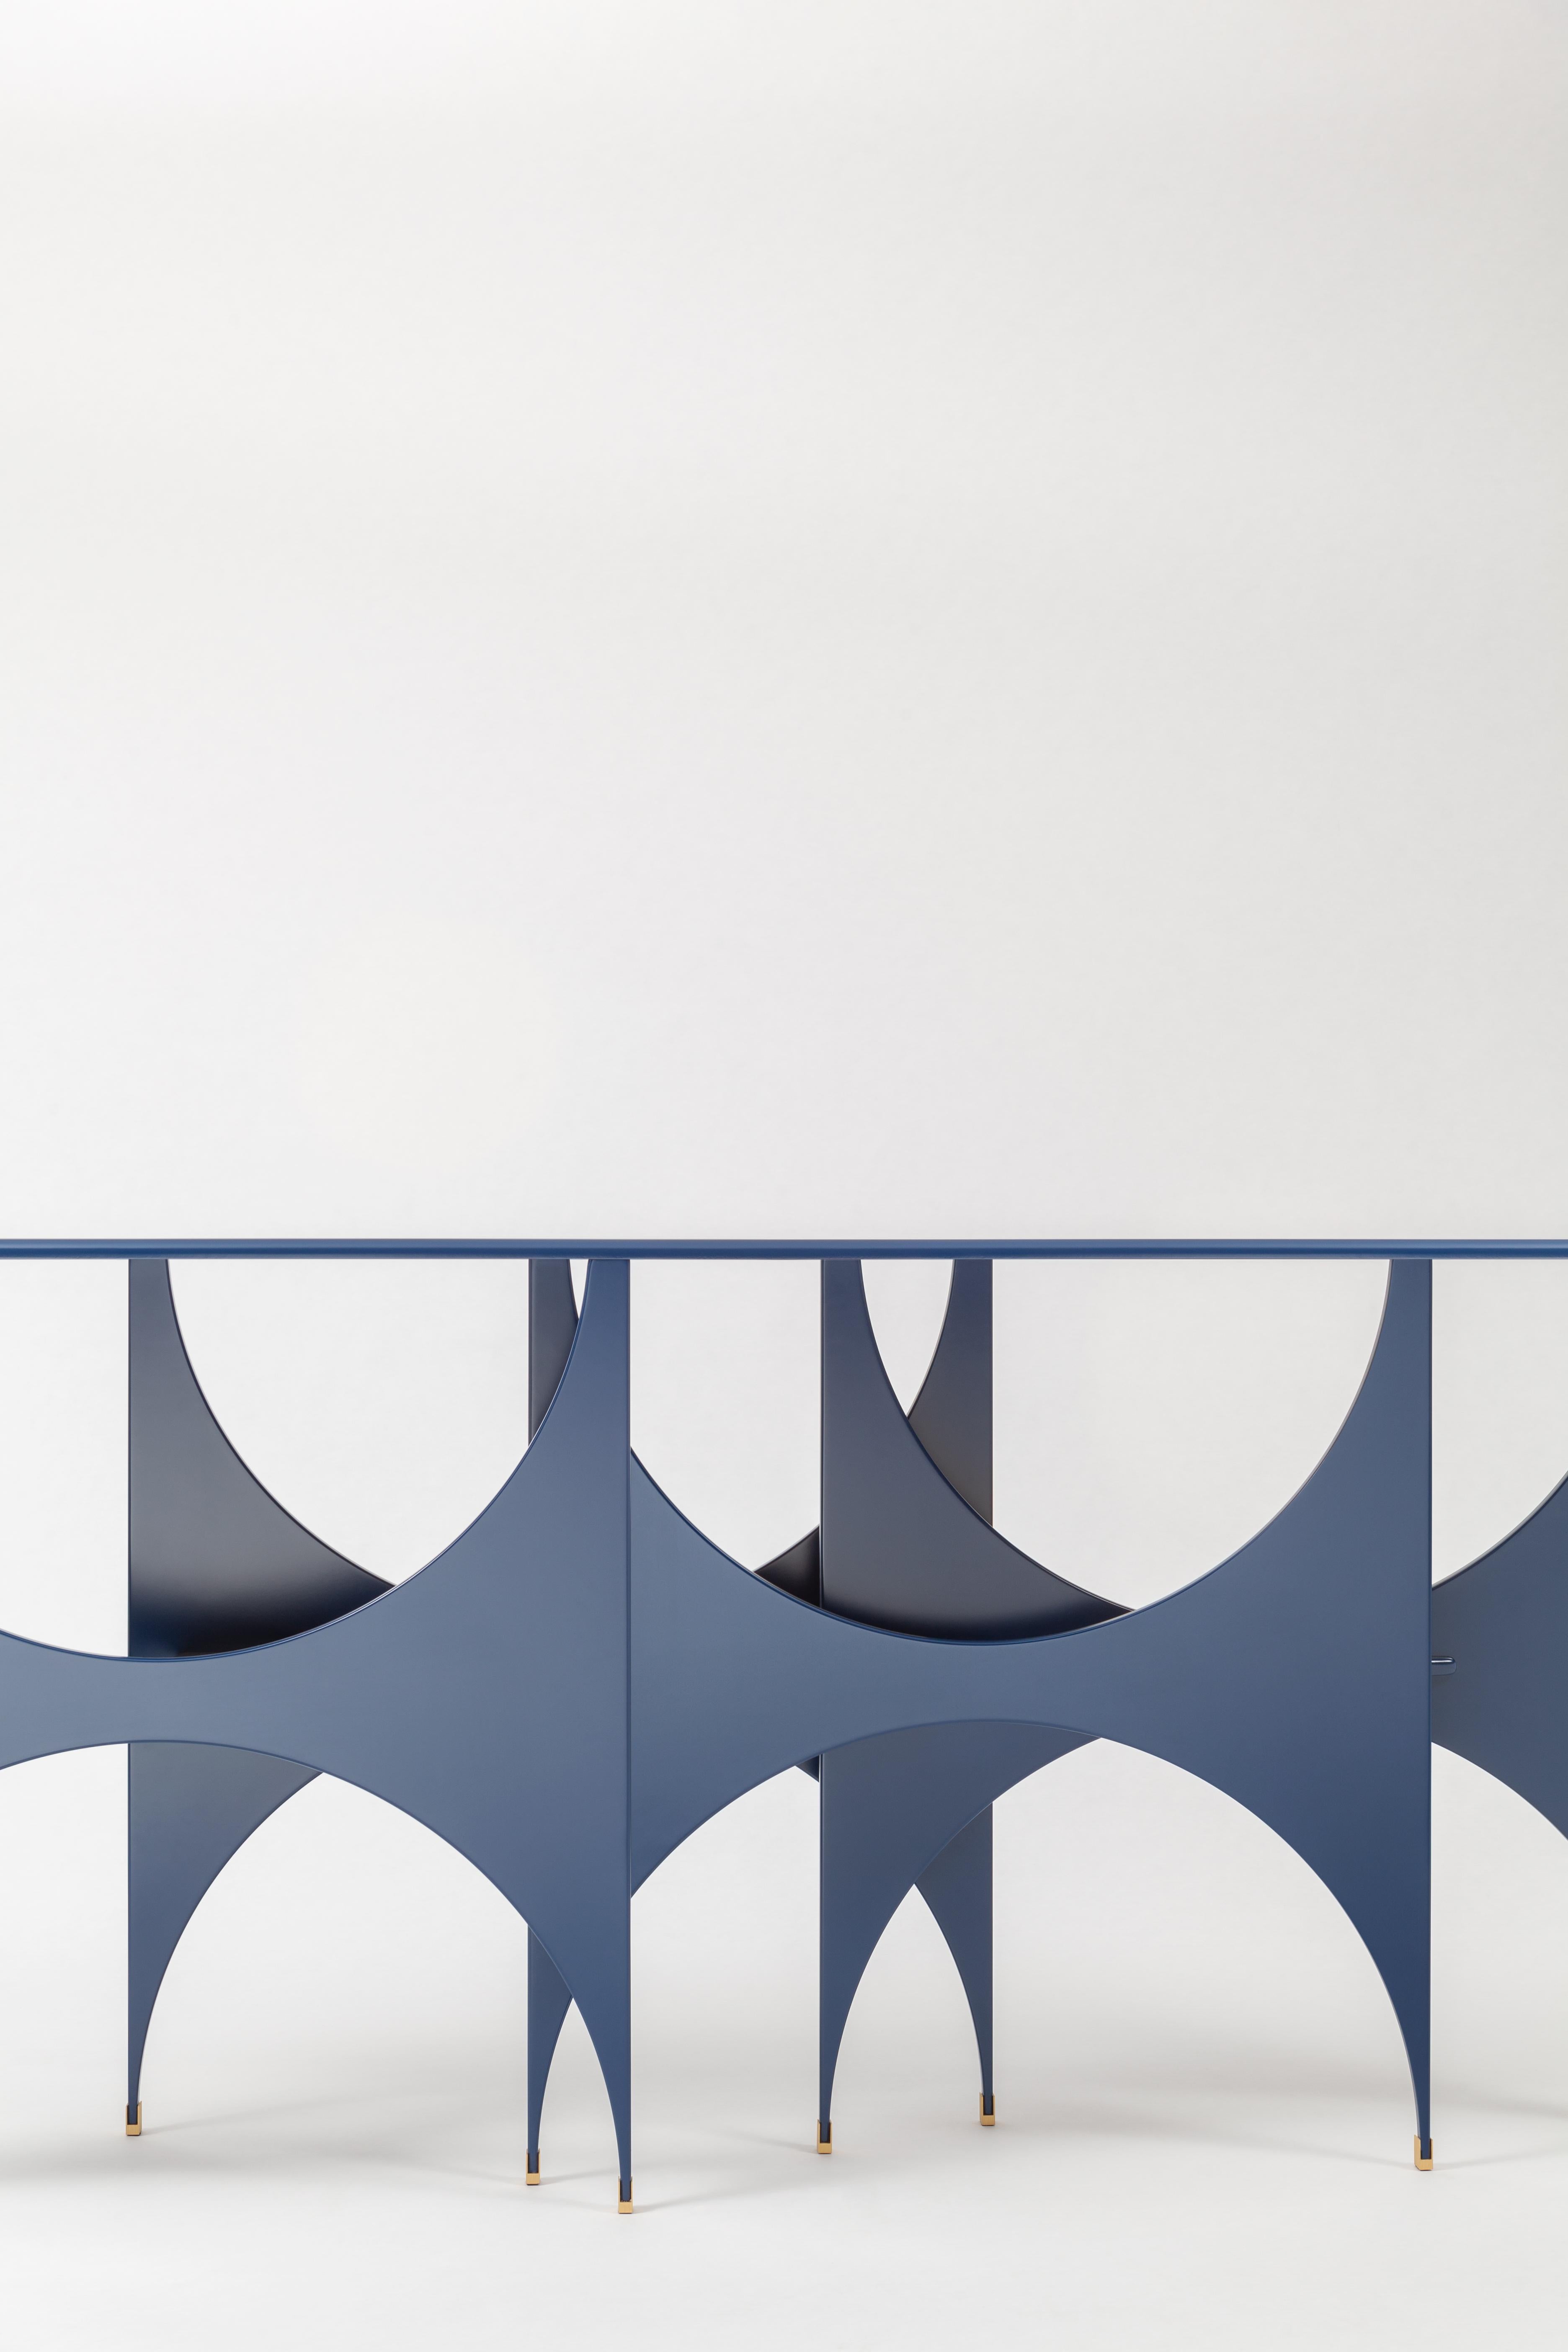 Zeitgenössische Konsole butterfly, Kollektion Paesaggio, entworfen von Hannes Peer für SEM. Holzstruktur, Beton/Zement, handgefertigte Harzoberfläche. Hinter der natürlichen Ikonographie der Namen der Möbelstücke verbergen sich Elemente mit einer